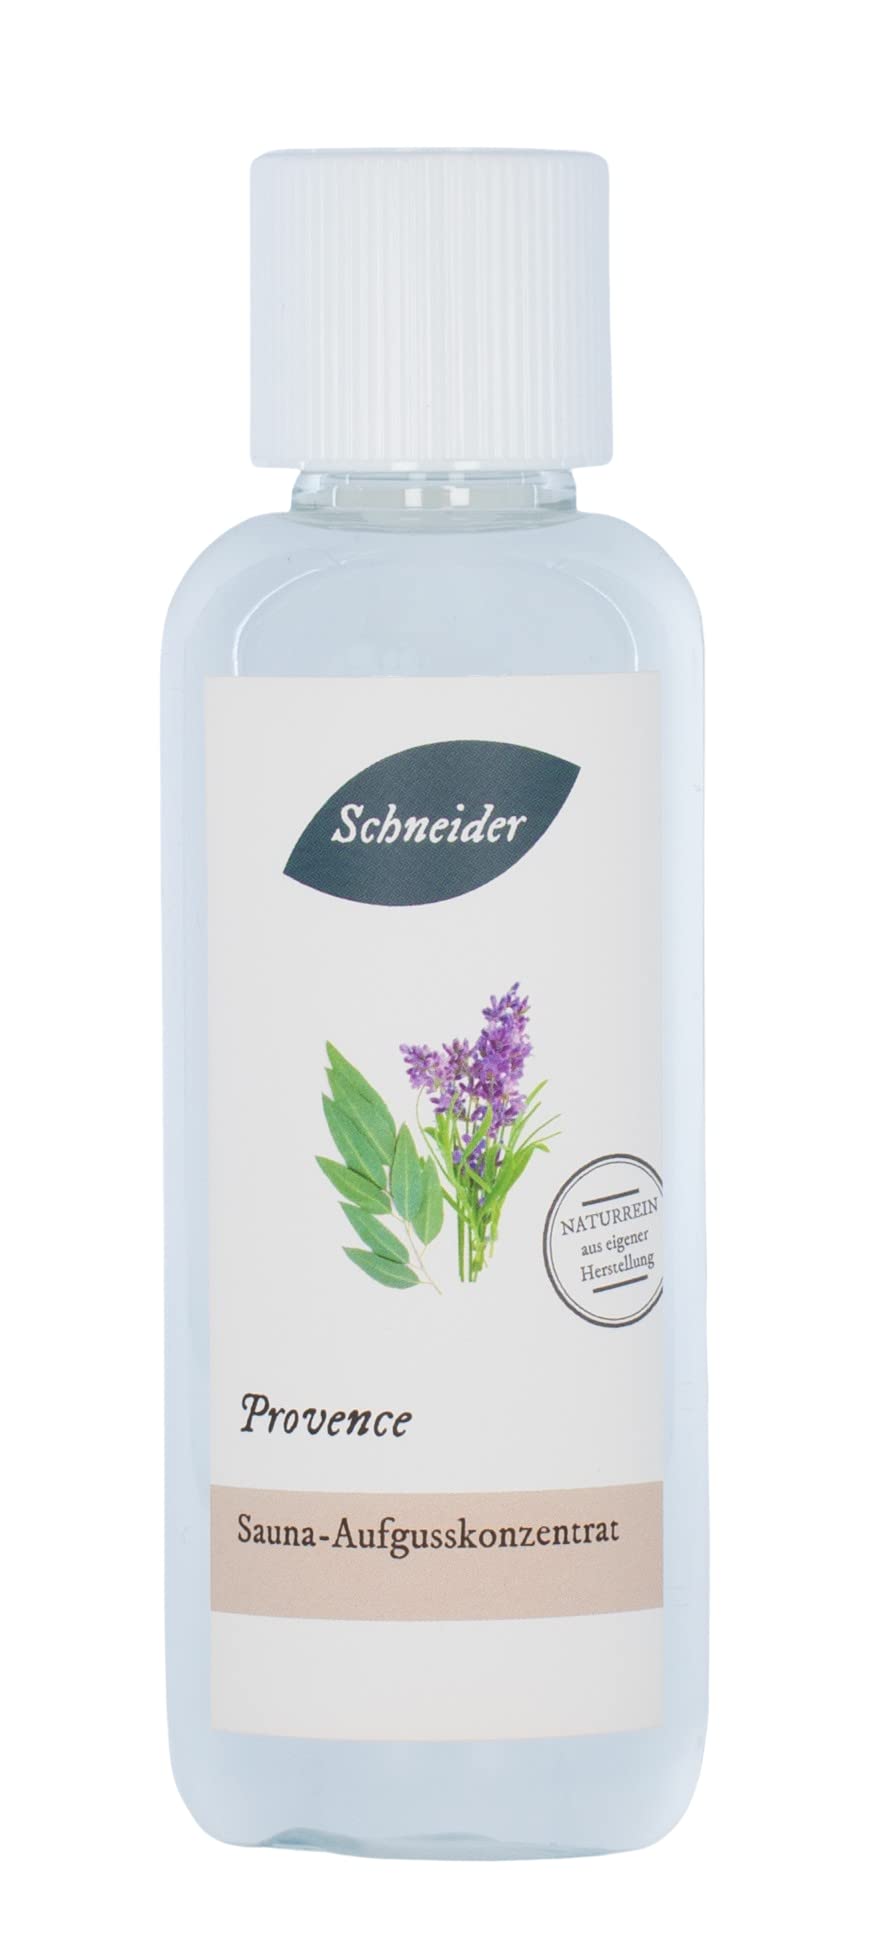 Saunabedarf Schneider - Aufgusskonzentrat Provence - frischer, blumig-herber Saunaaufguss - 250ml Inhalt